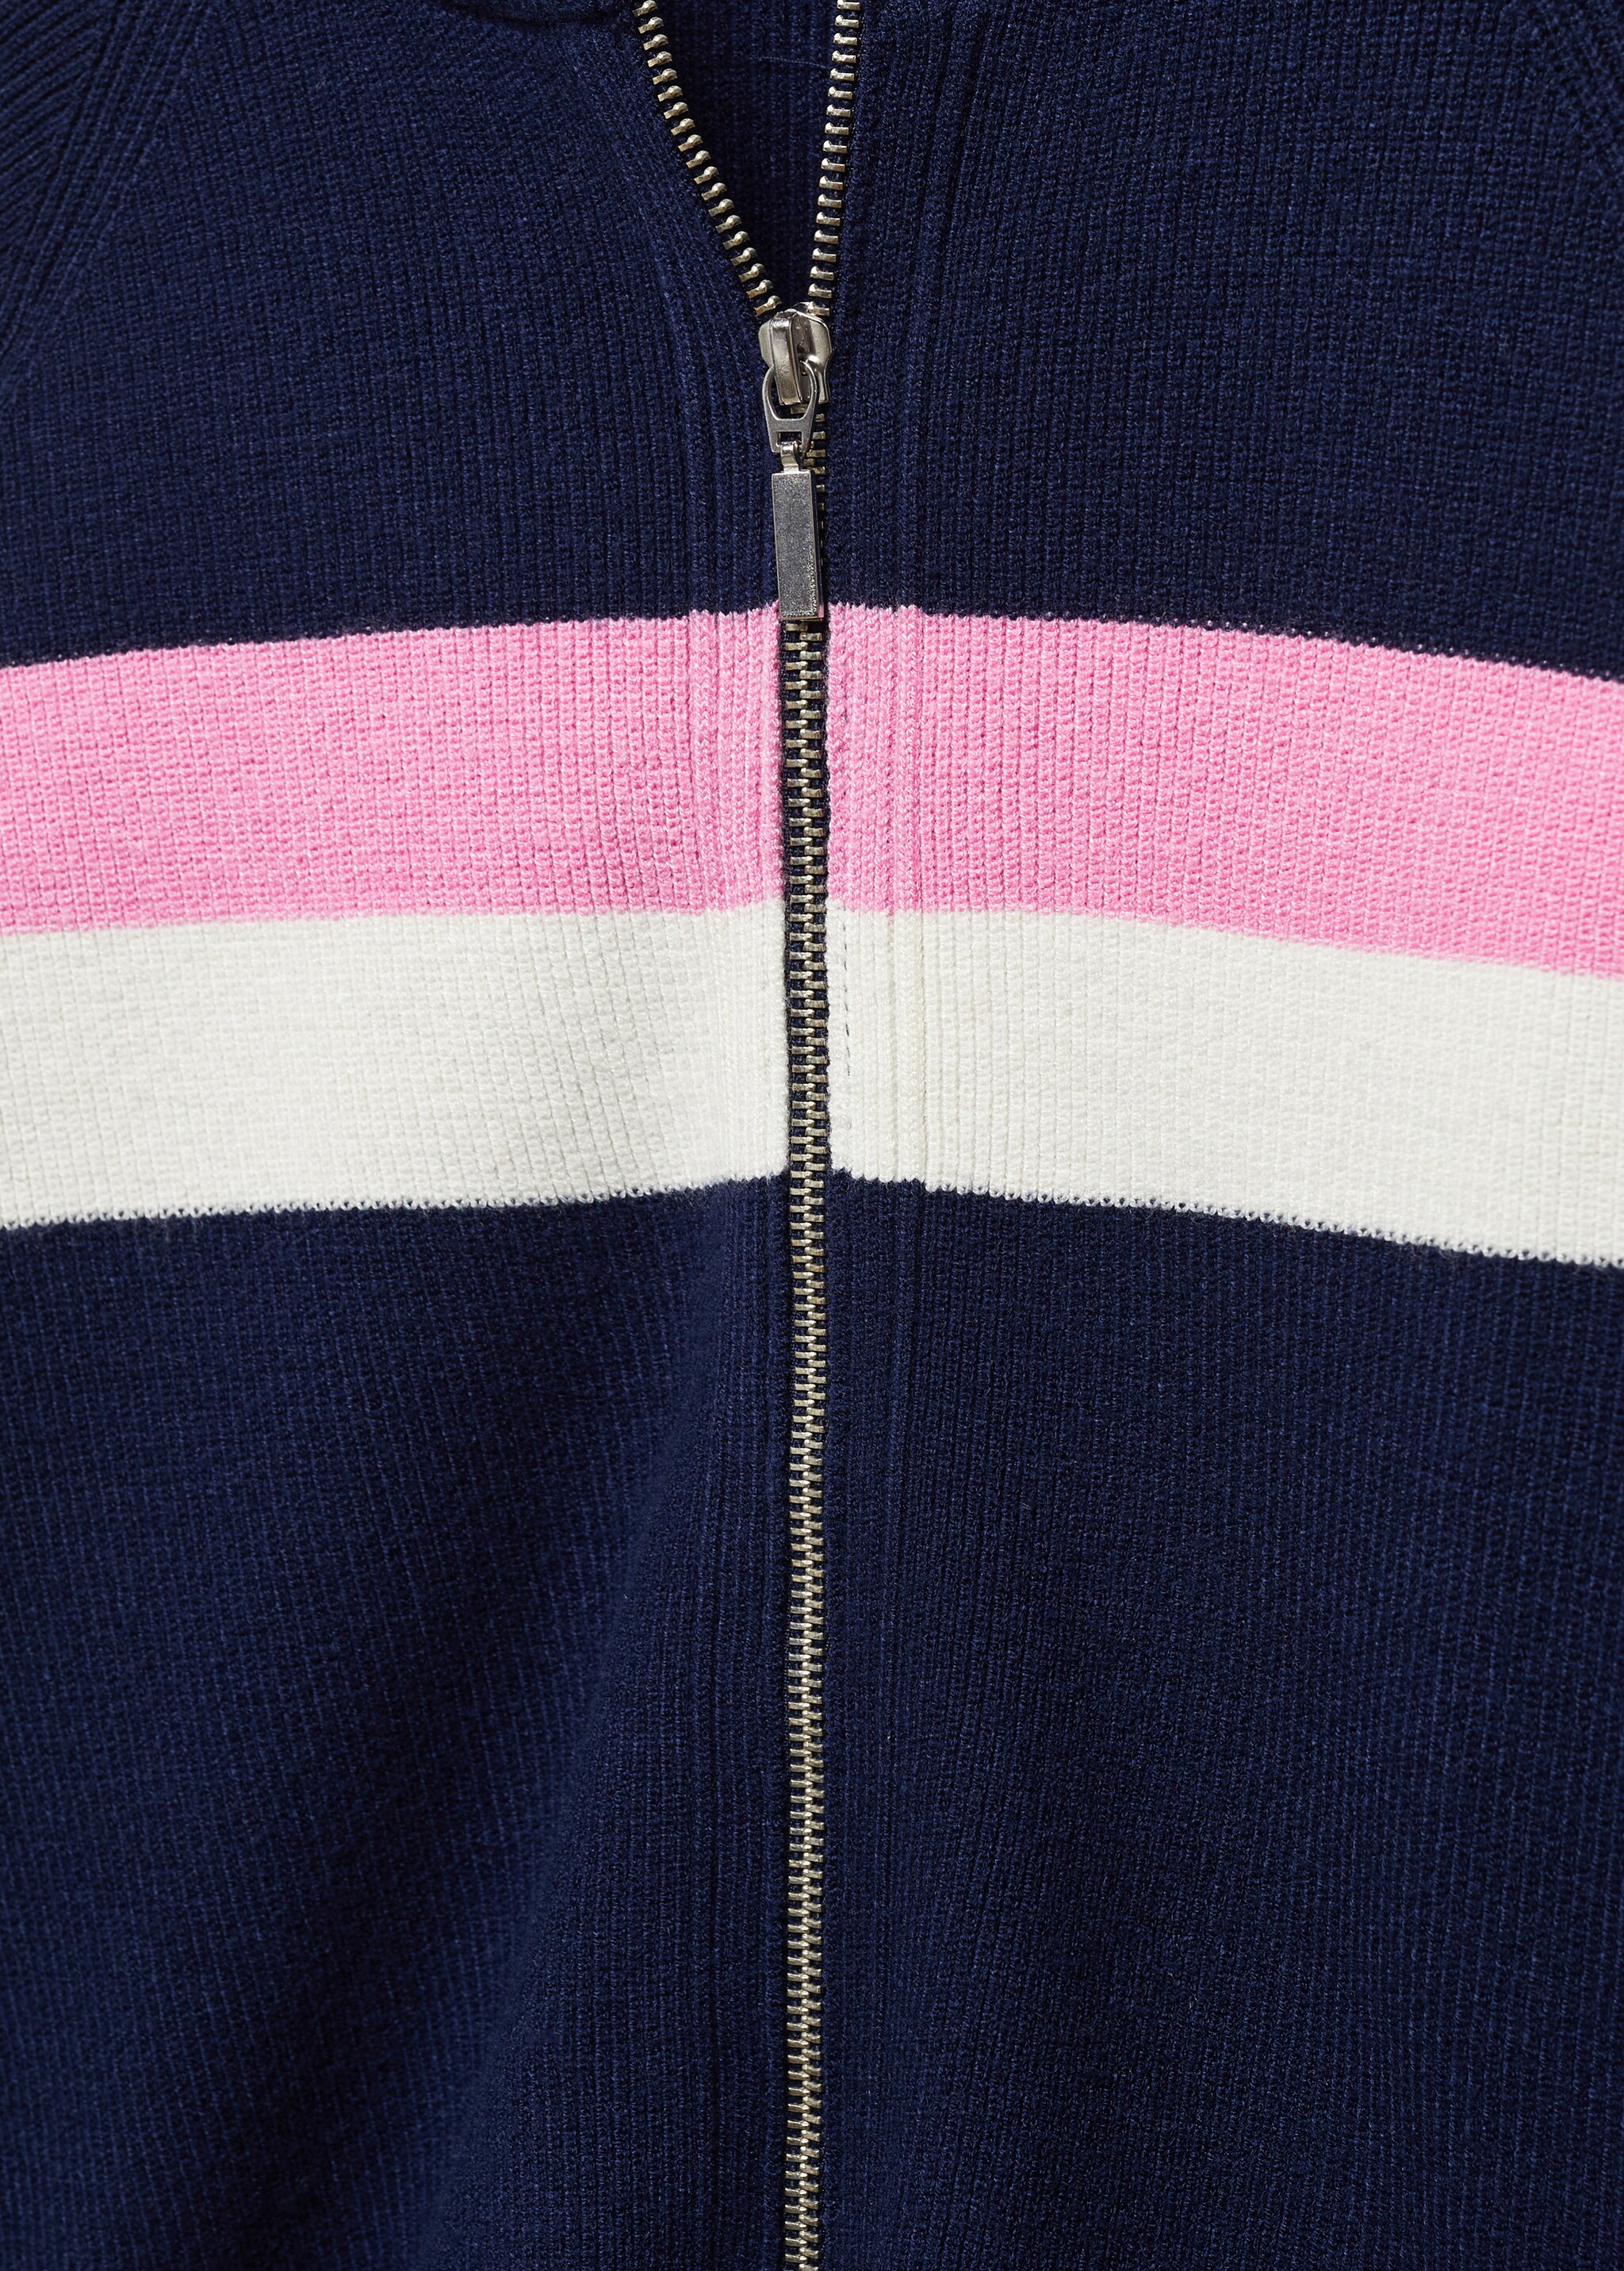 High neck sweater with zip - Detail van het artikel 8